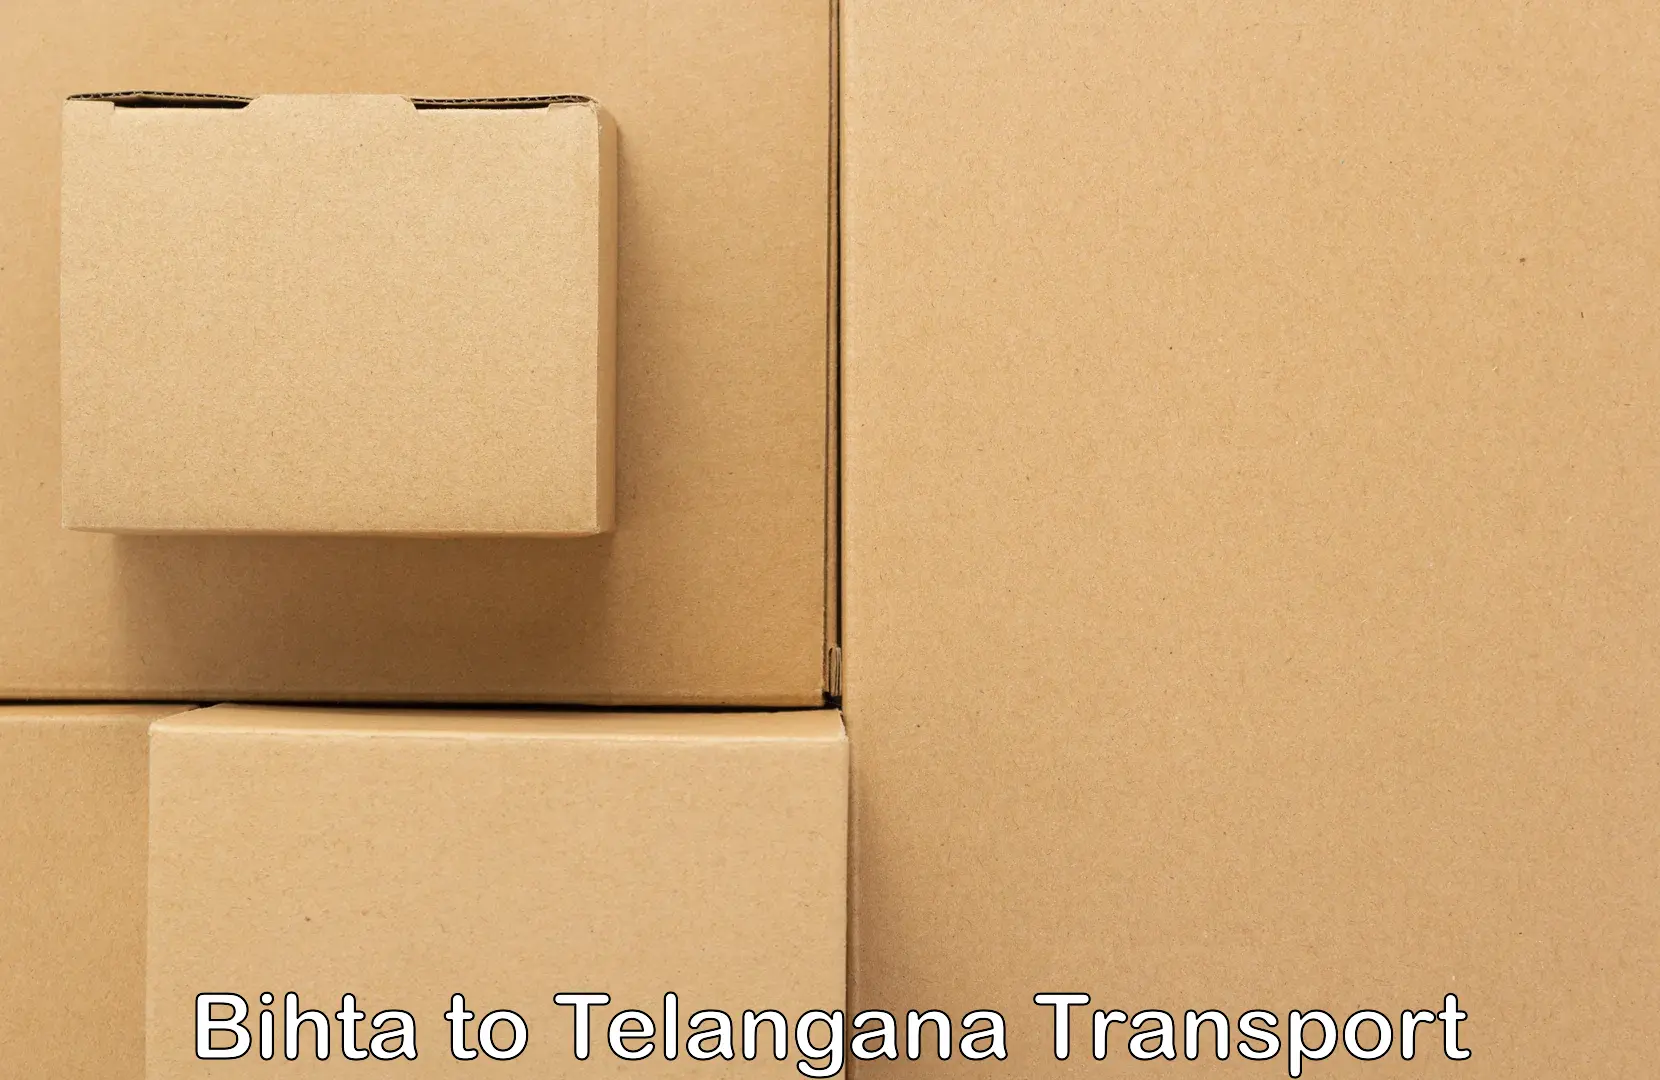 Road transport online services Bihta to Tadoor